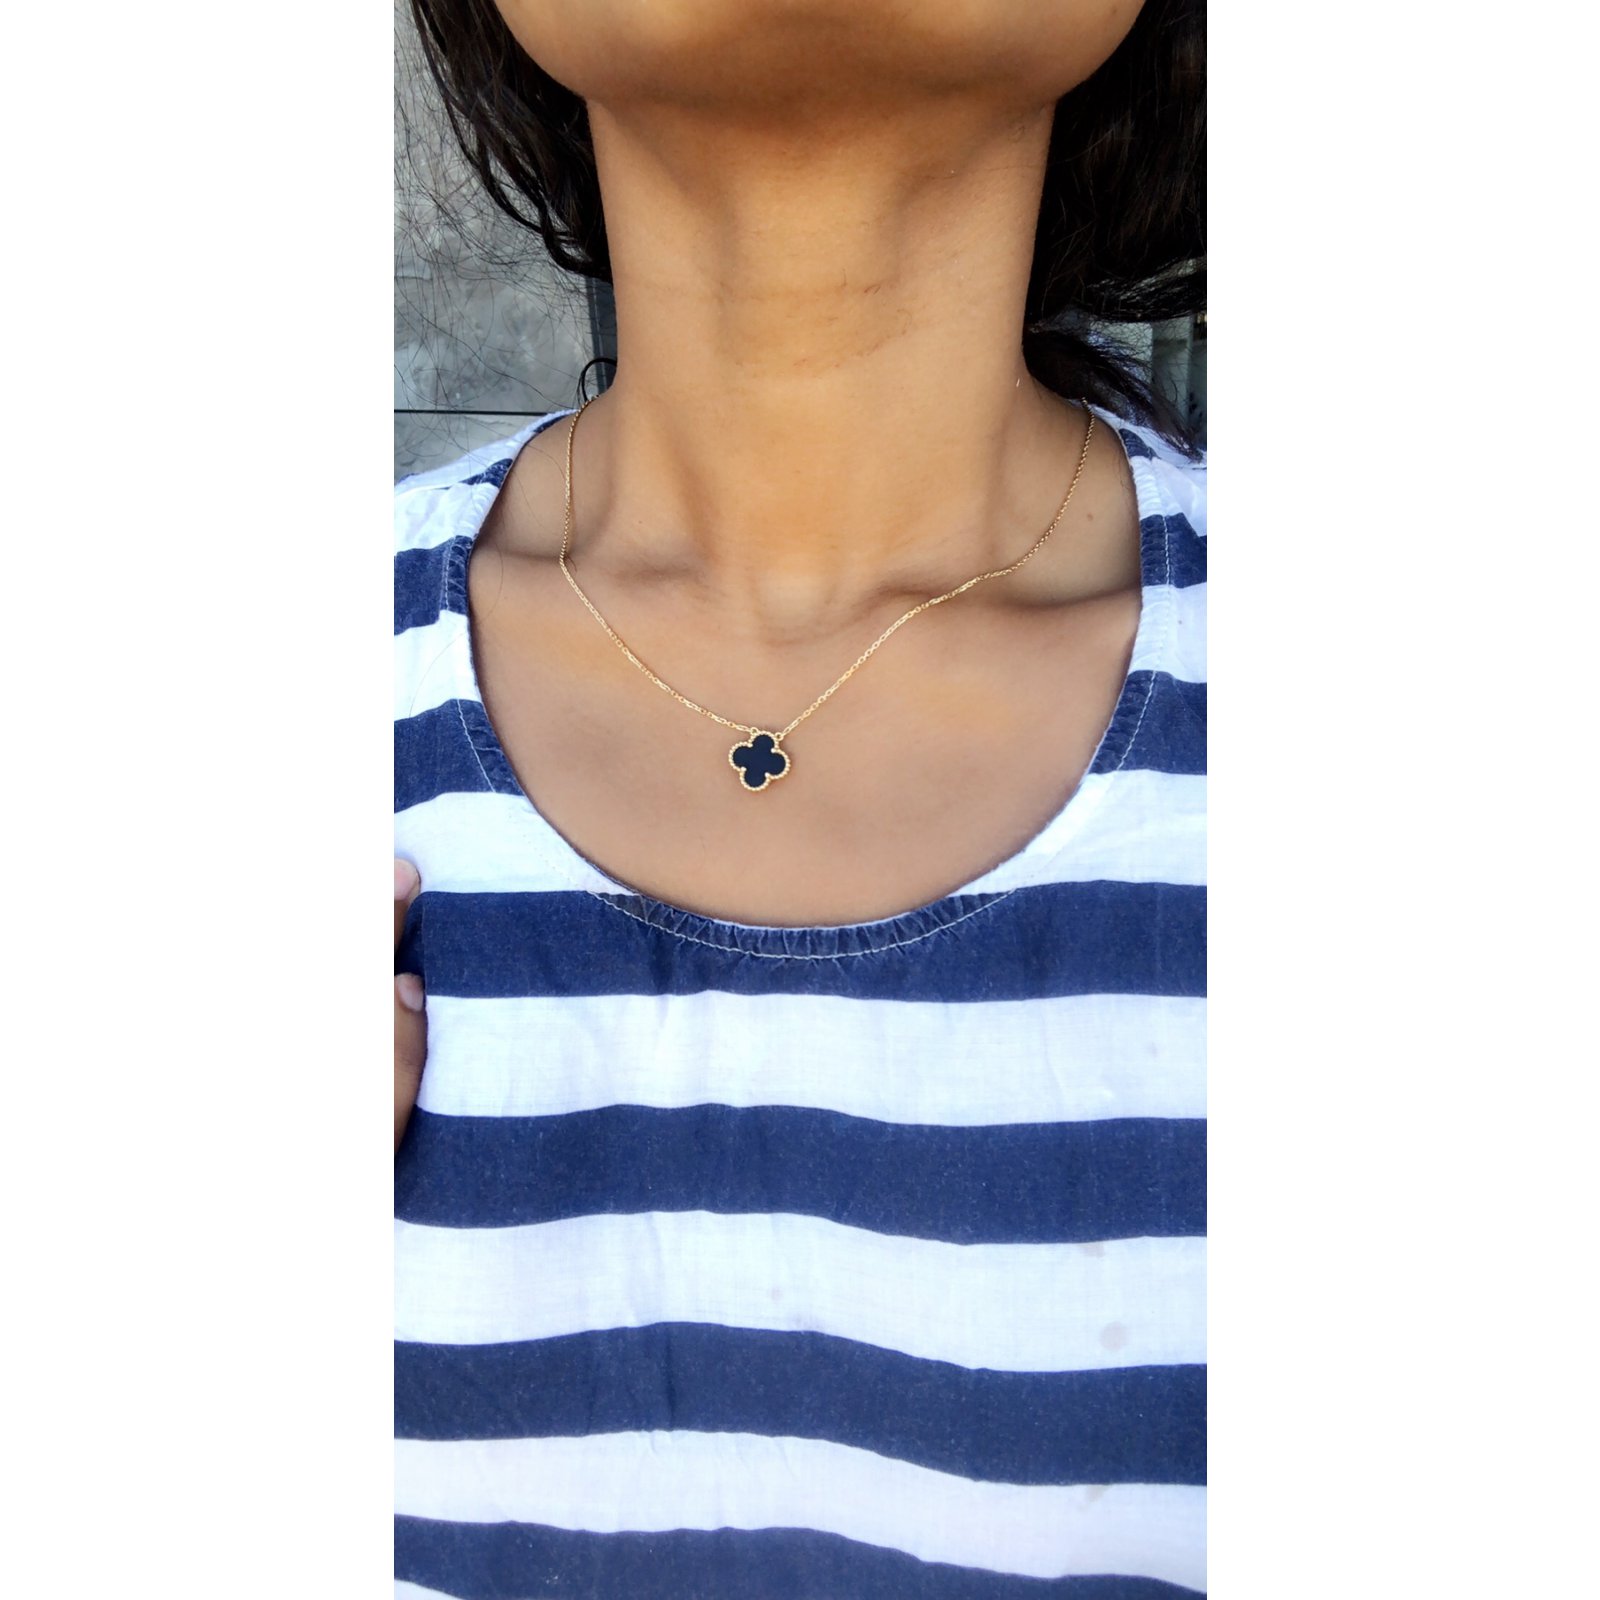 van cleef necklace on neck